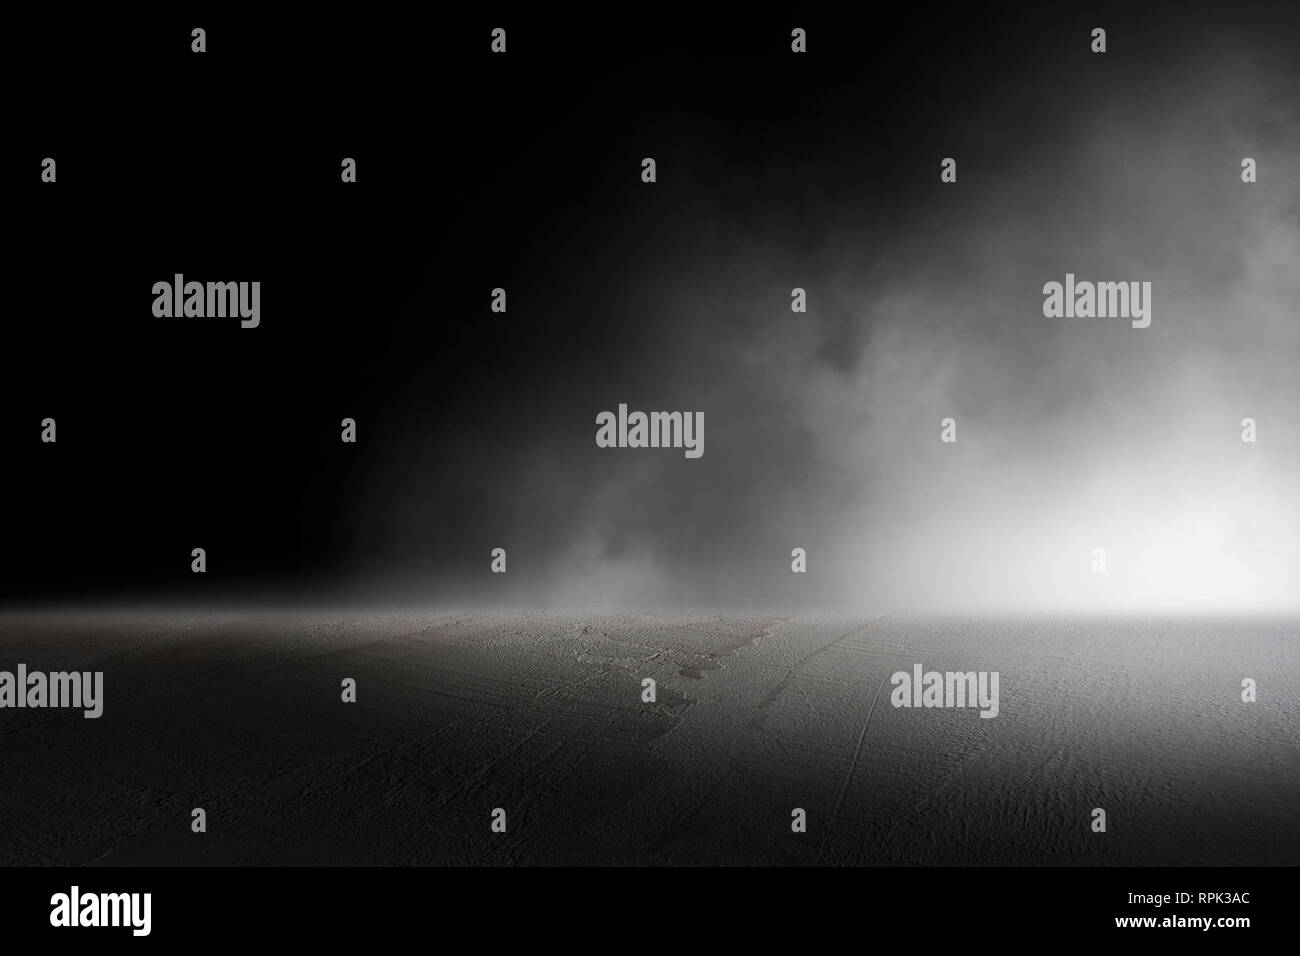 La texture scuro pavimento in calcestruzzo con foschia o nebbia Foto Stock